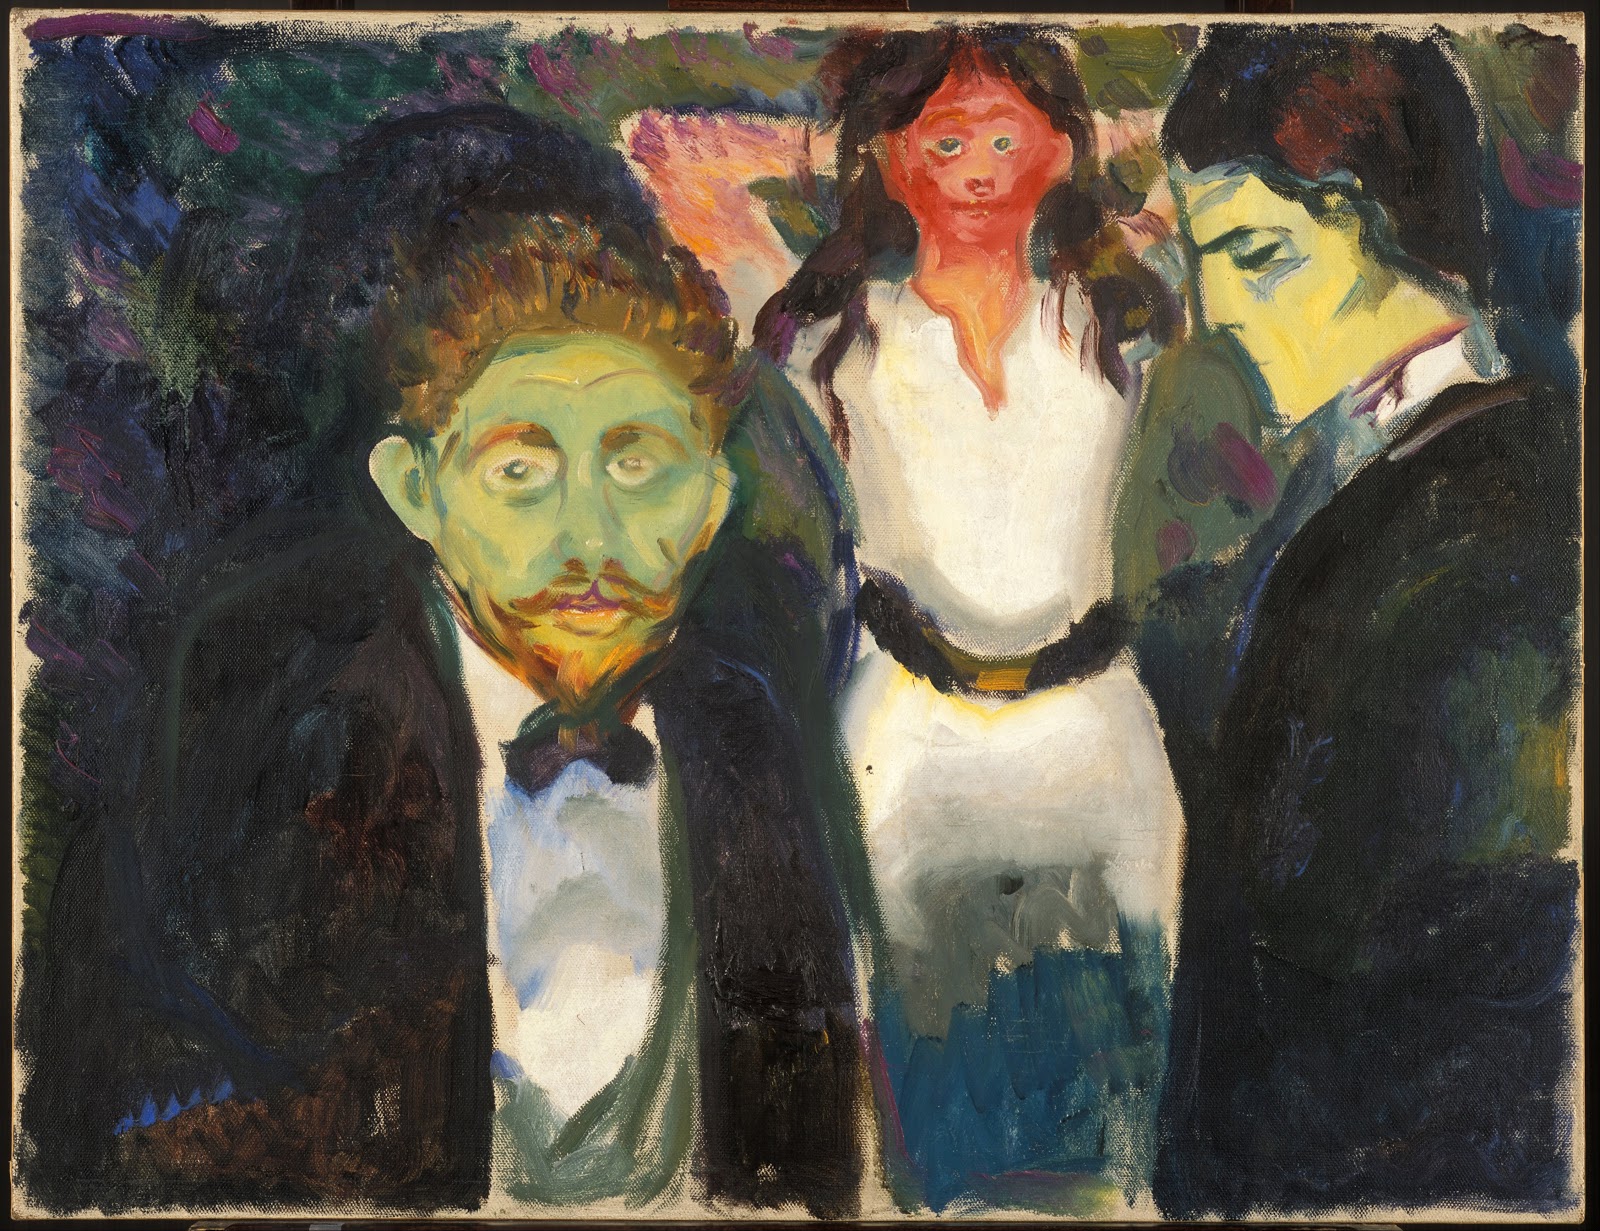 Edvard+Munch-1863-1944 (24).jpg